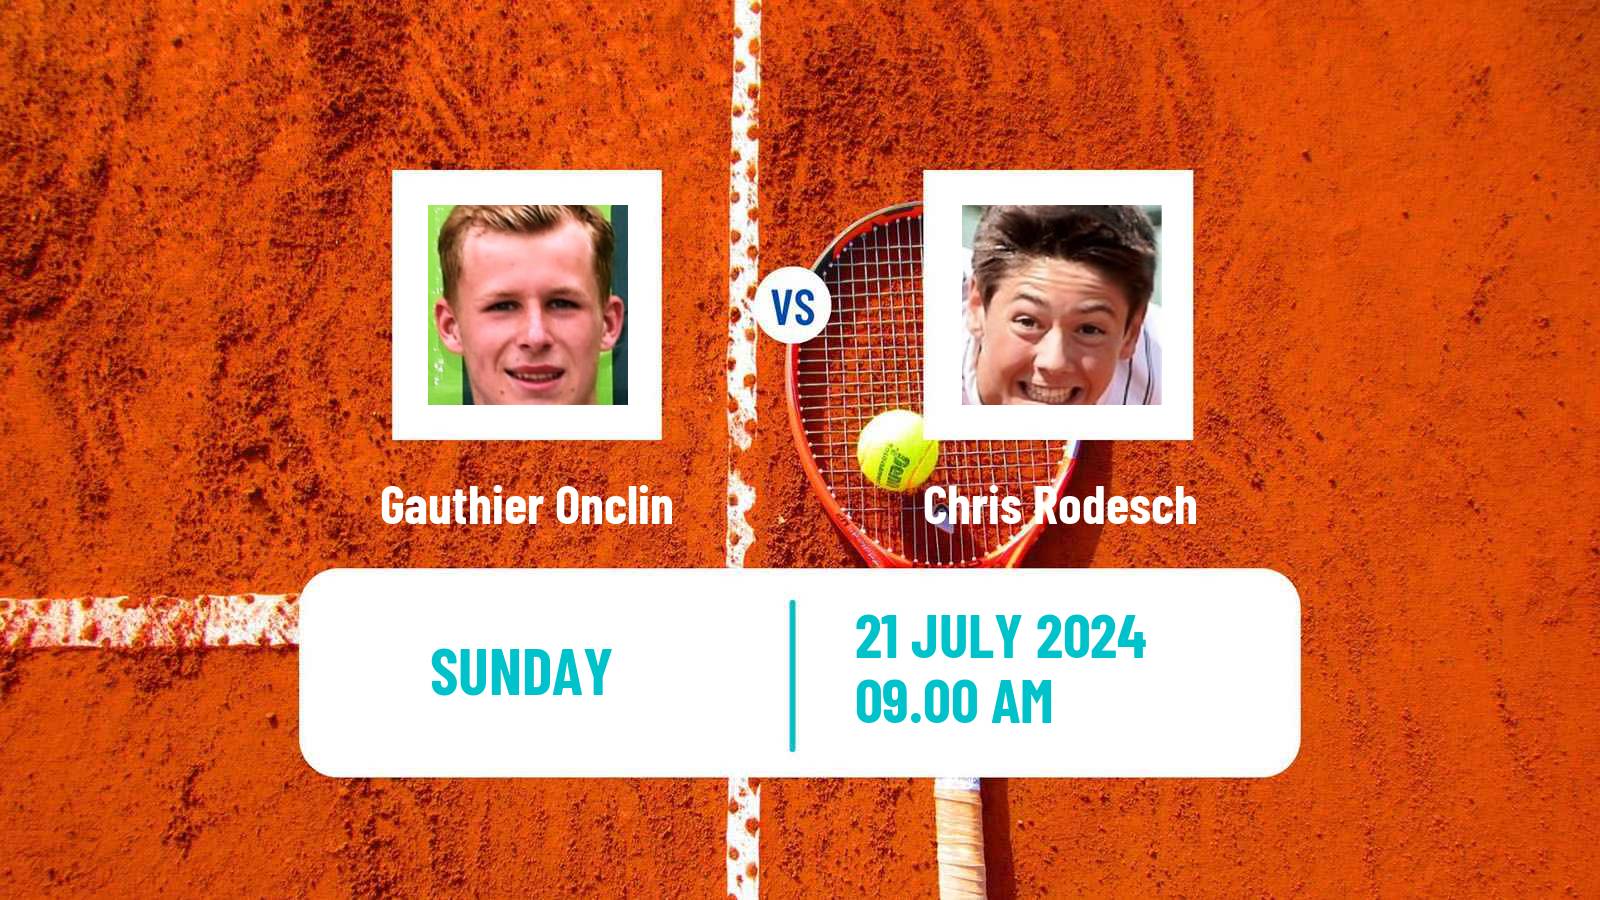 Tennis ITF M25 Esch Alzette 2 Men Gauthier Onclin - Chris Rodesch